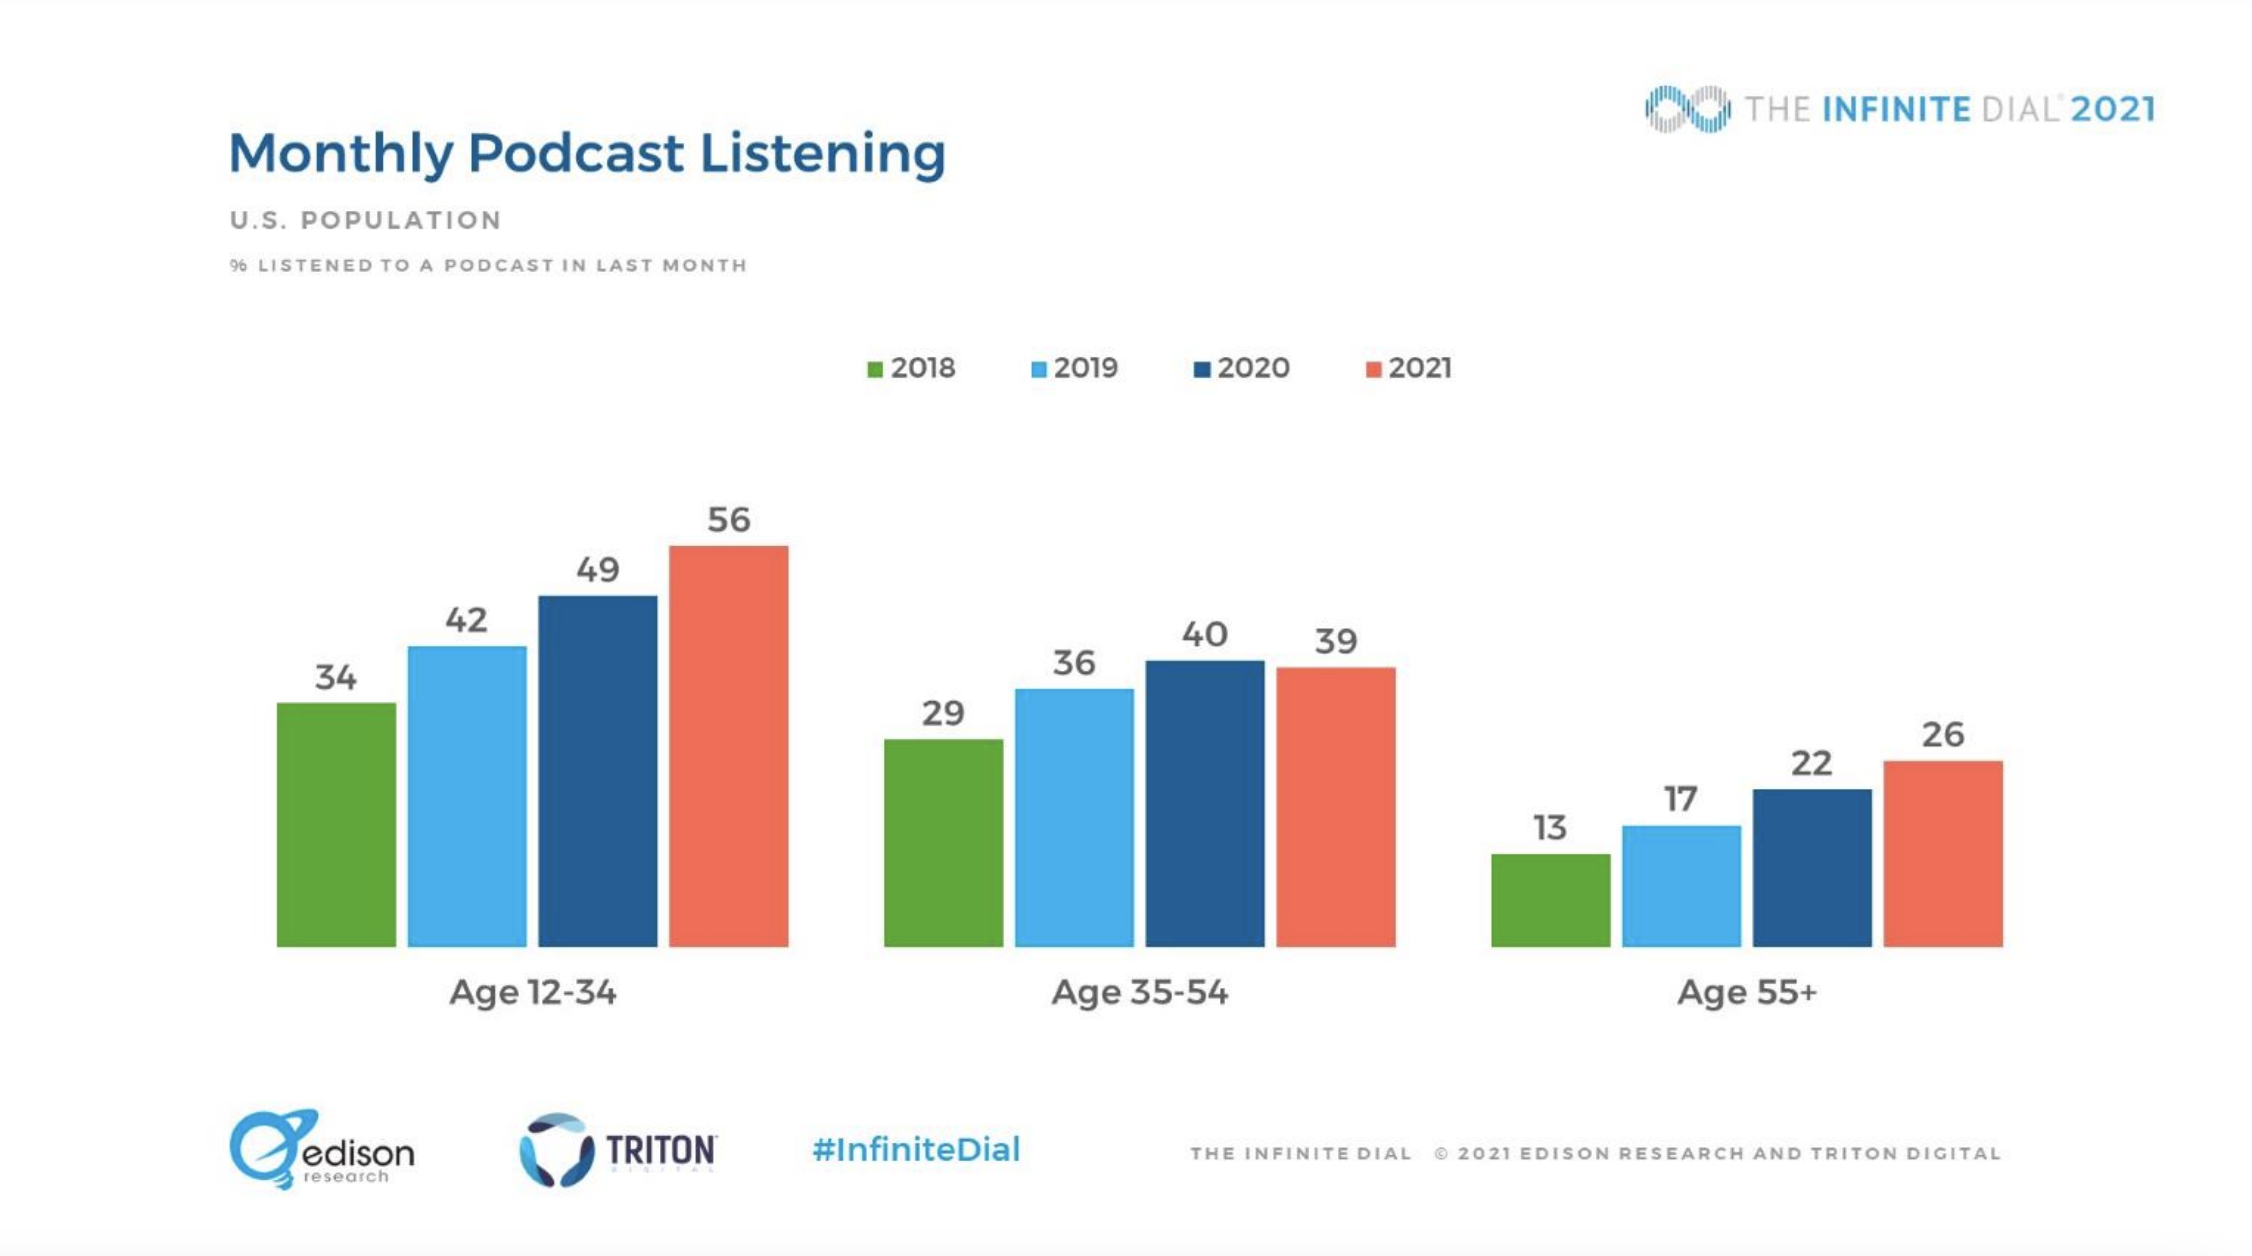 L'audience des podcasts en hausse selon The Infinite Dial